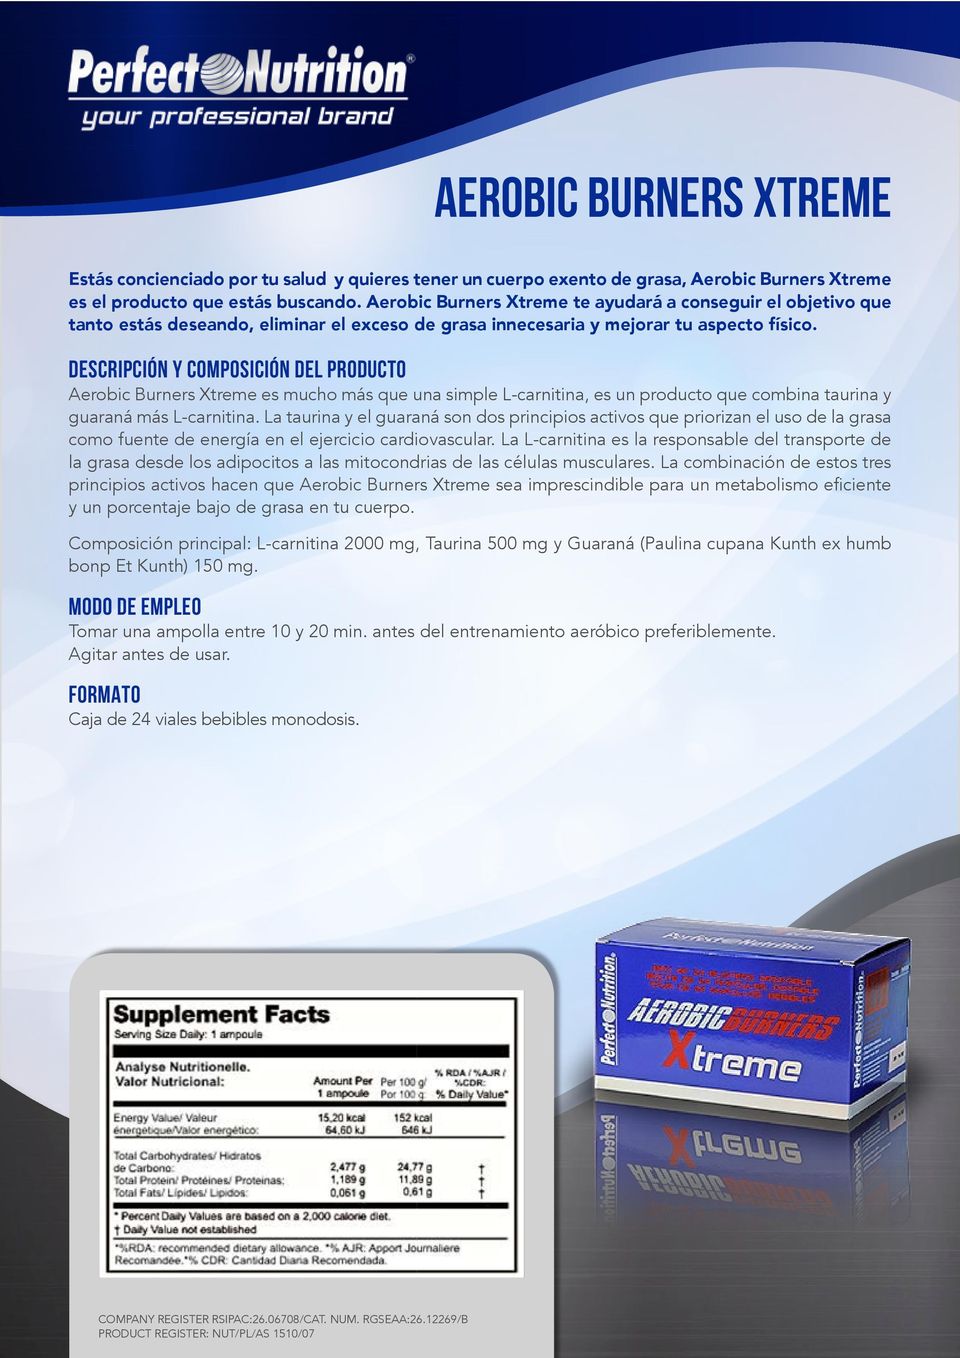 Aerobic Burners Xtreme te ayudará a conseguir el objetivo que tanto estás deseando, eliminar el exceso de grasa